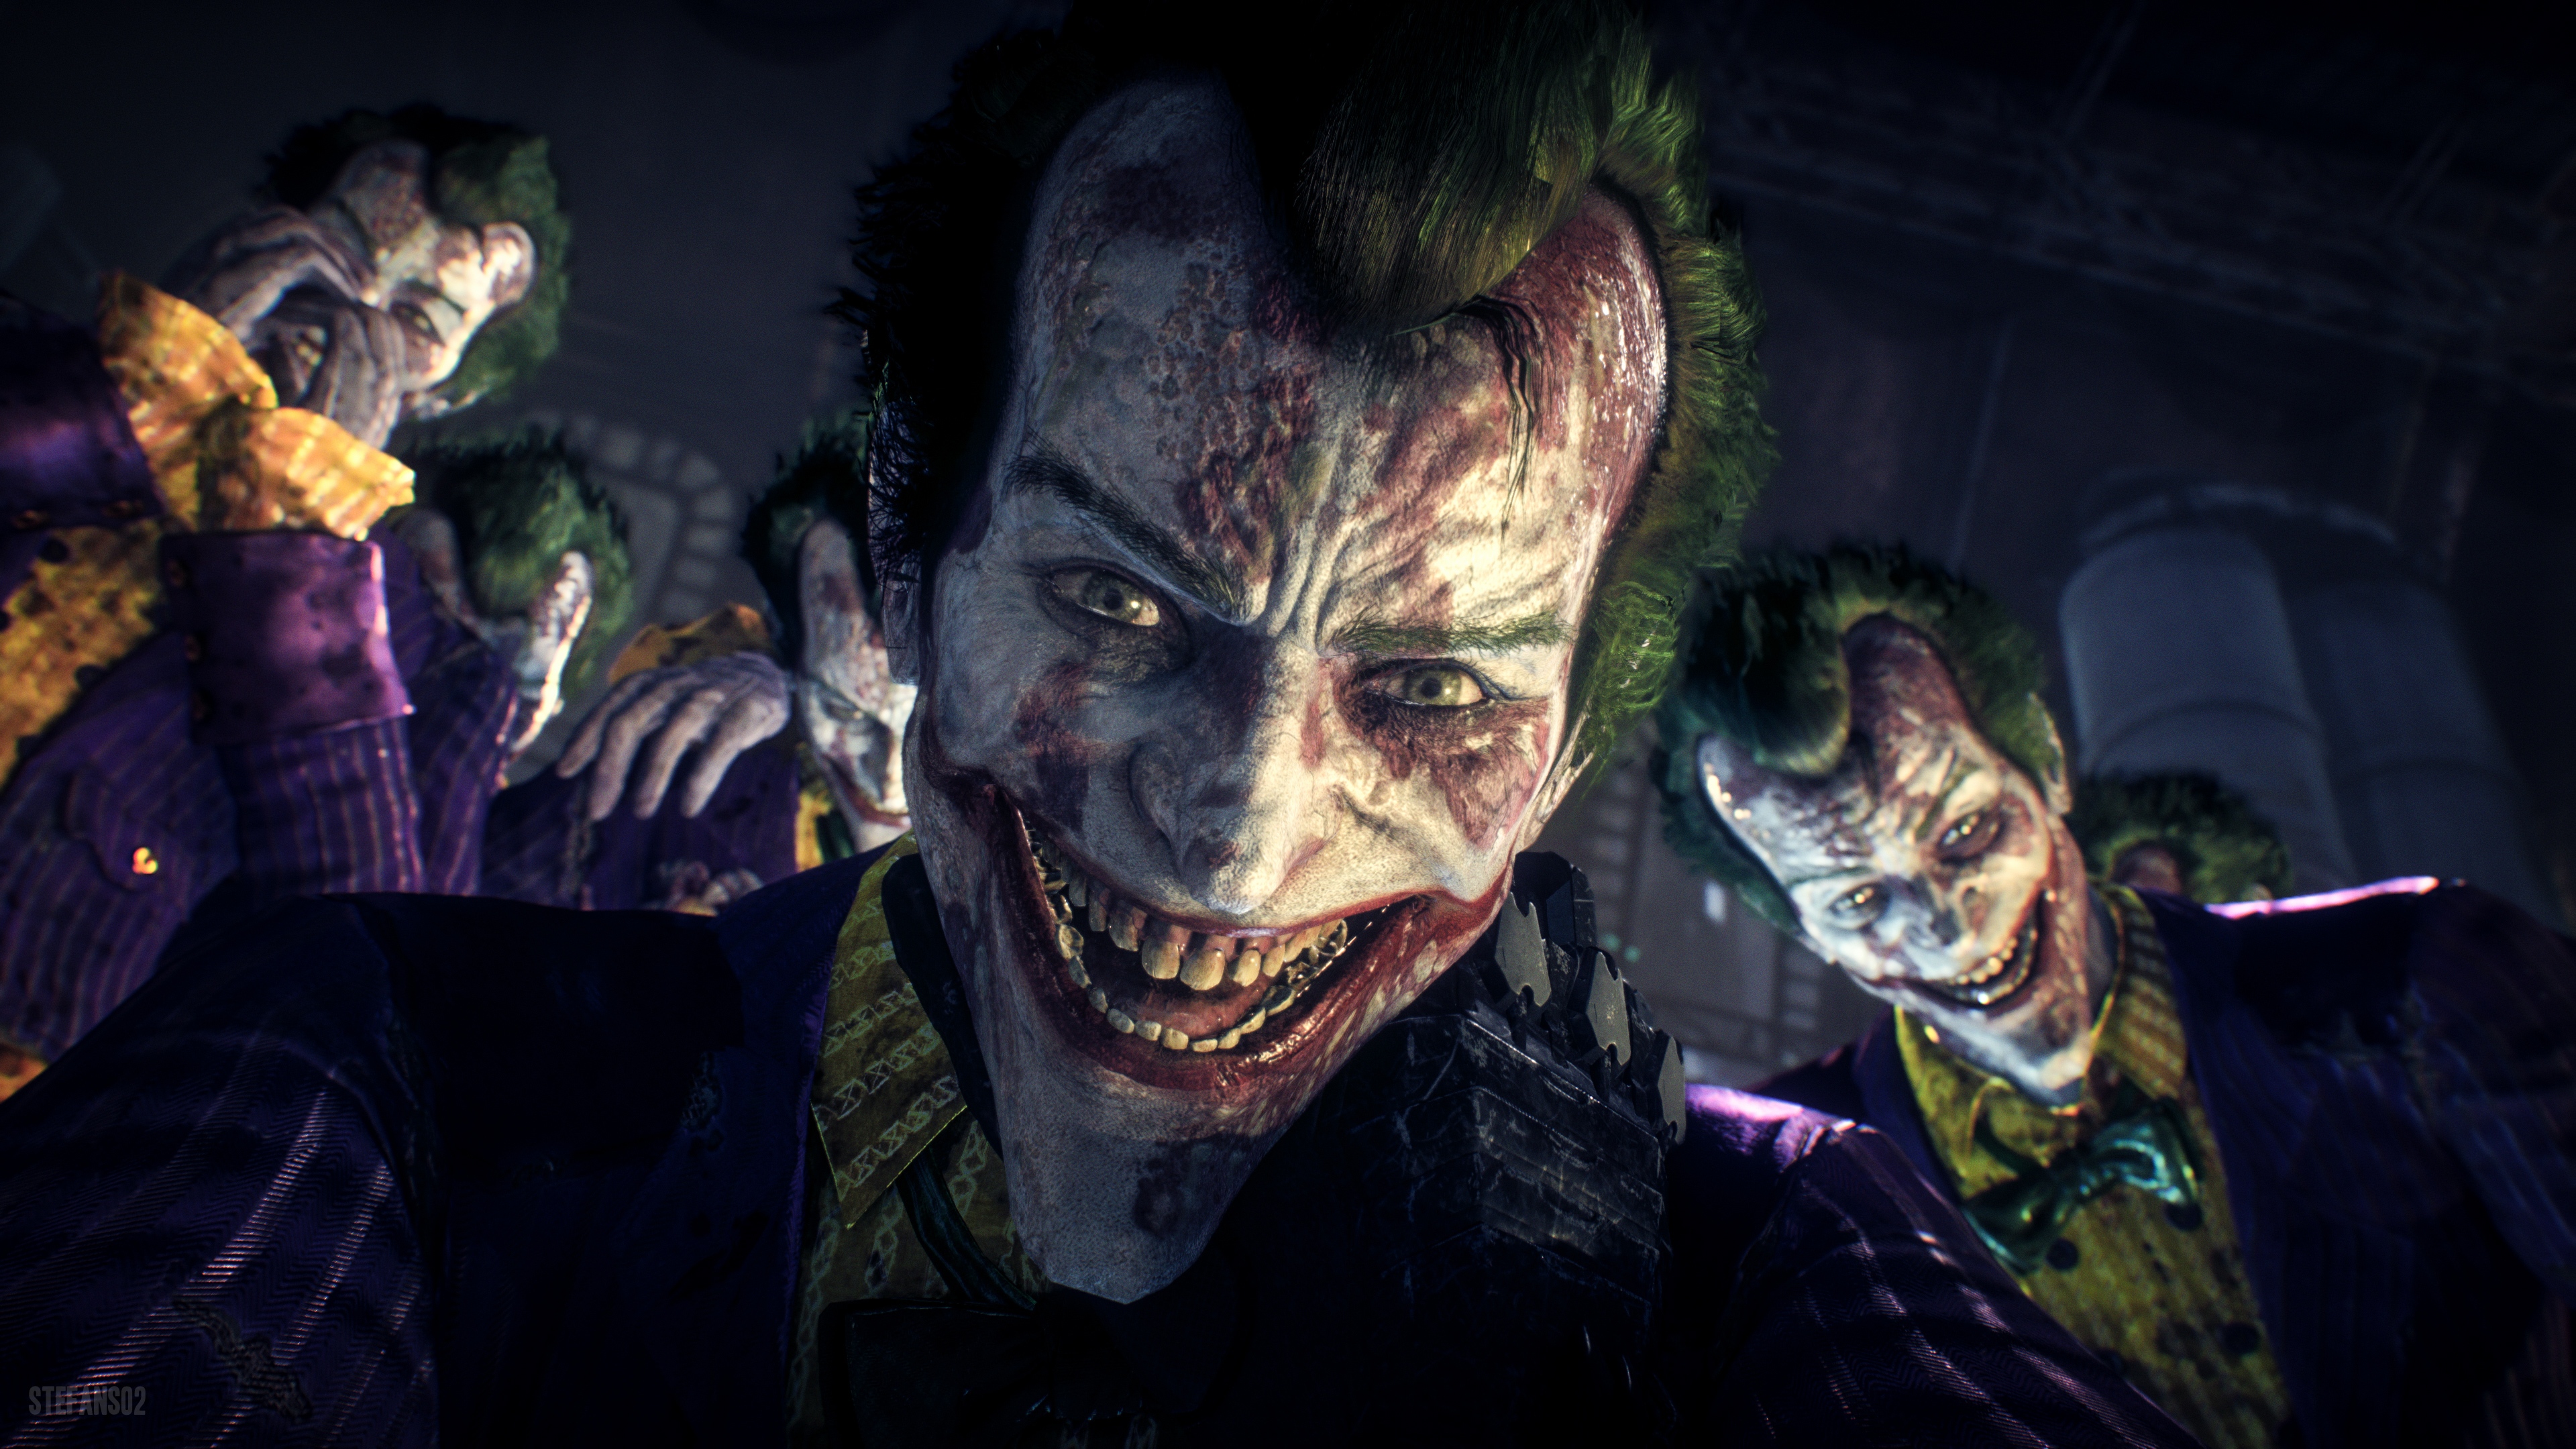 Joker Images - danger joker